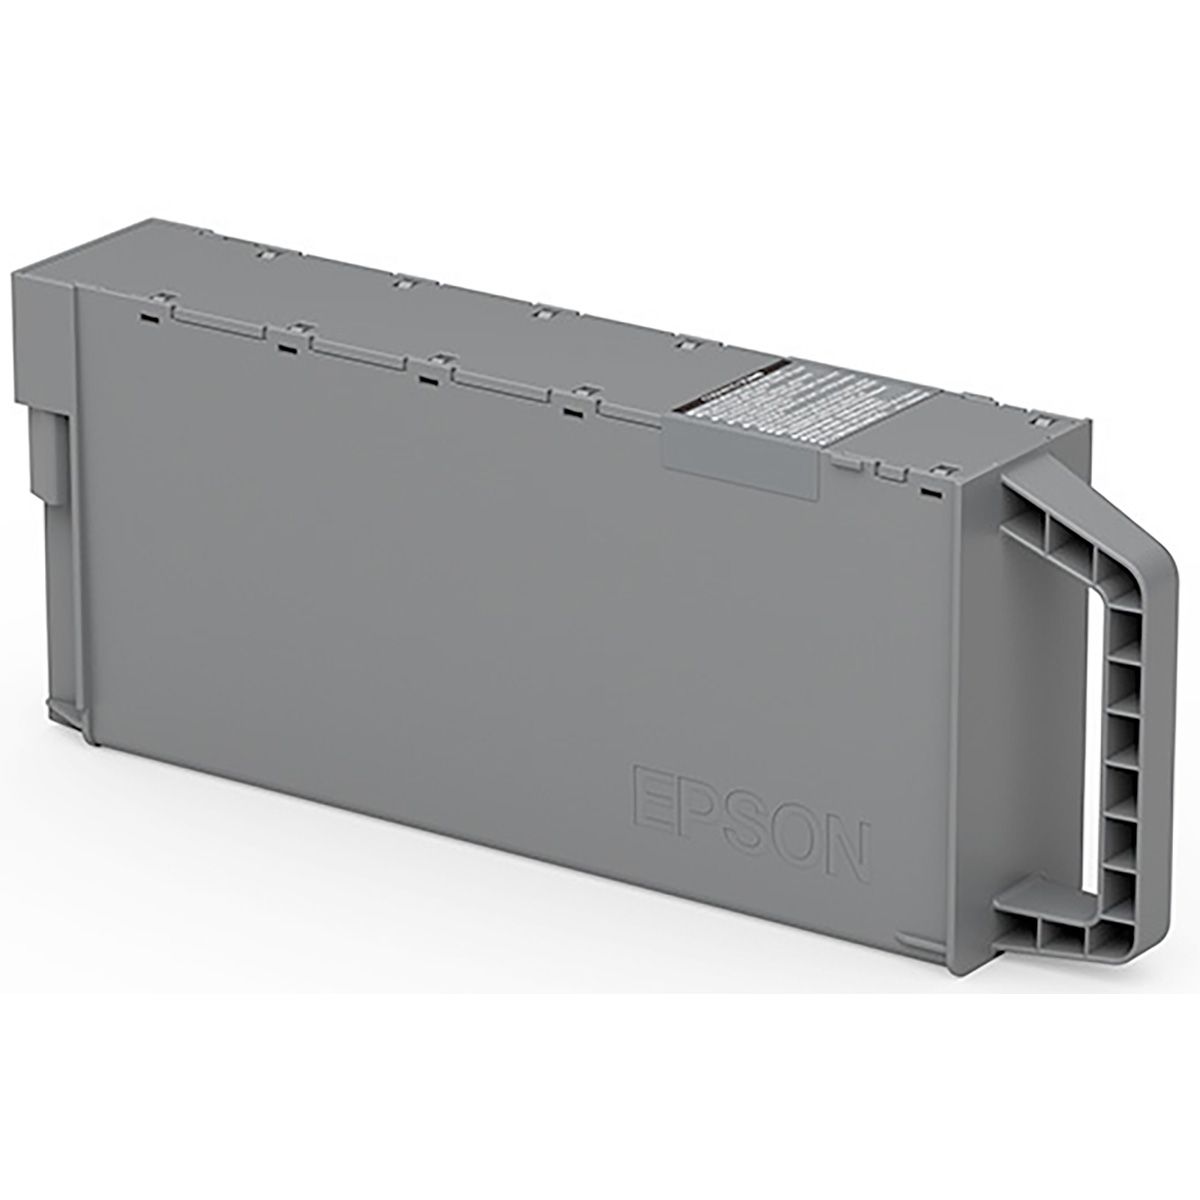 Epson Maintenance Box (Main) pro SC-P8500D/ T7700D